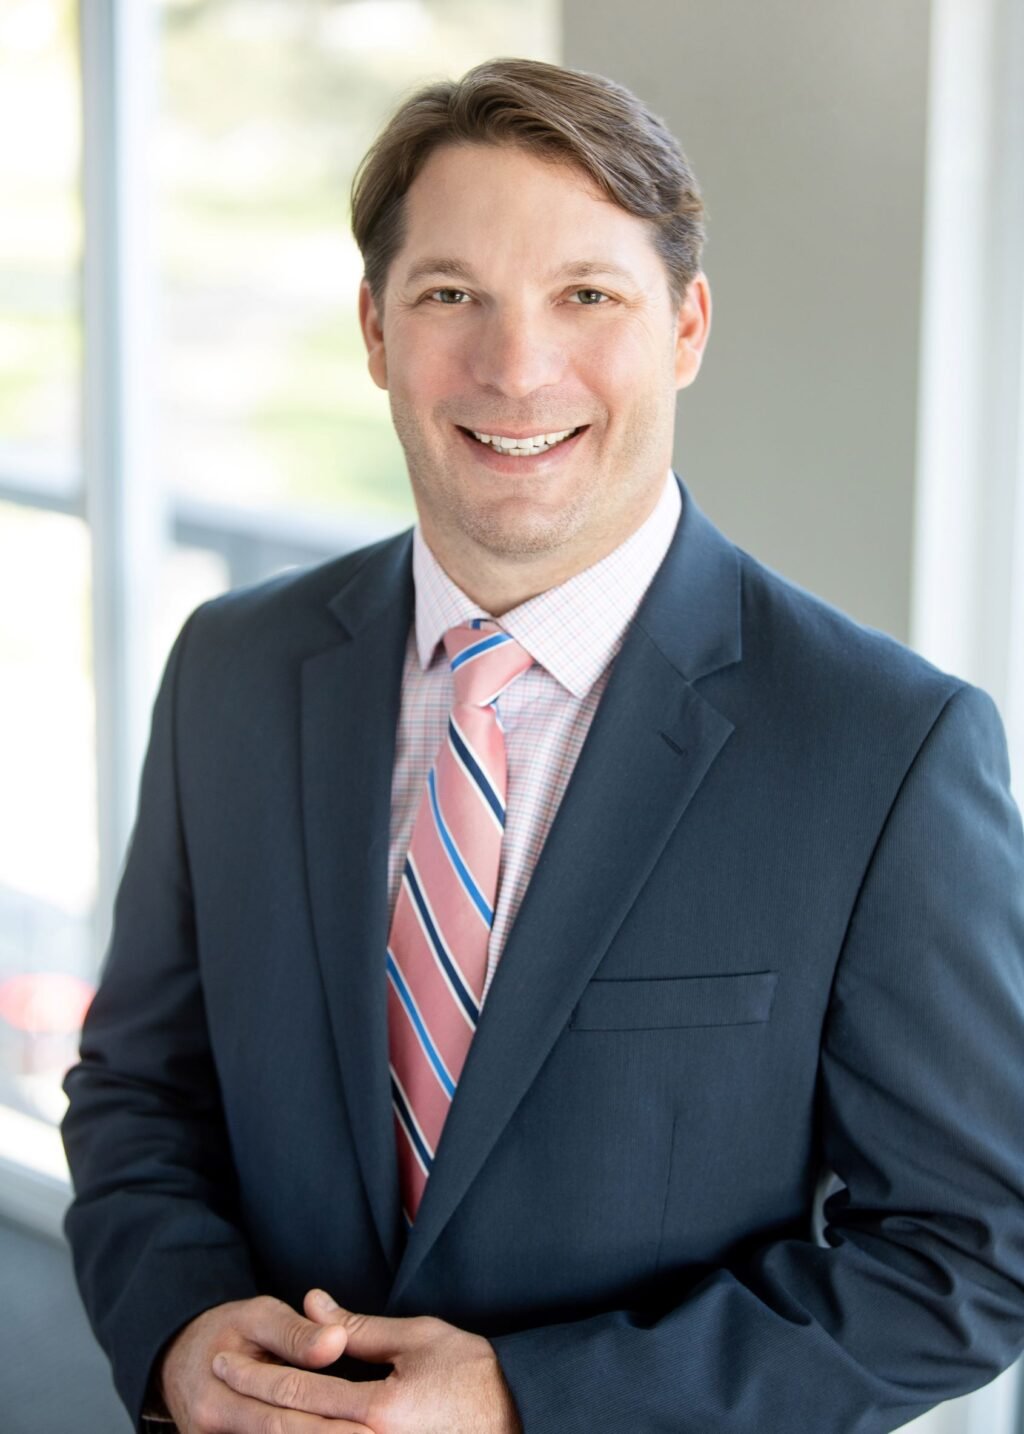 Powers Insurance & Risk Management's Scott Weiler